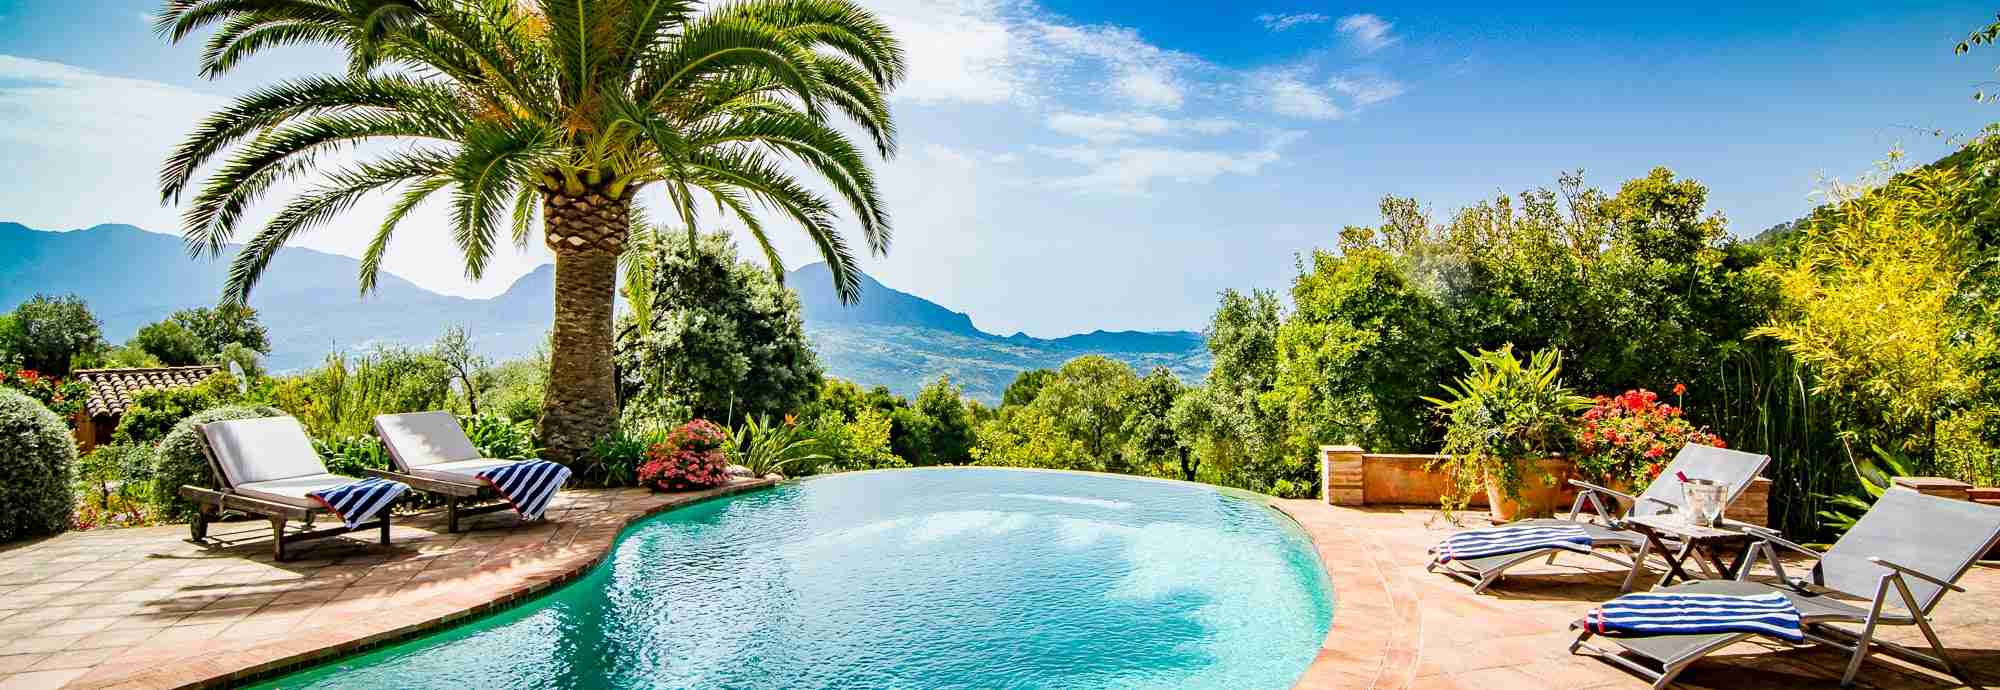 Romántica casita en el bosque con exuberantes jardines y vistas al Mediterráneo